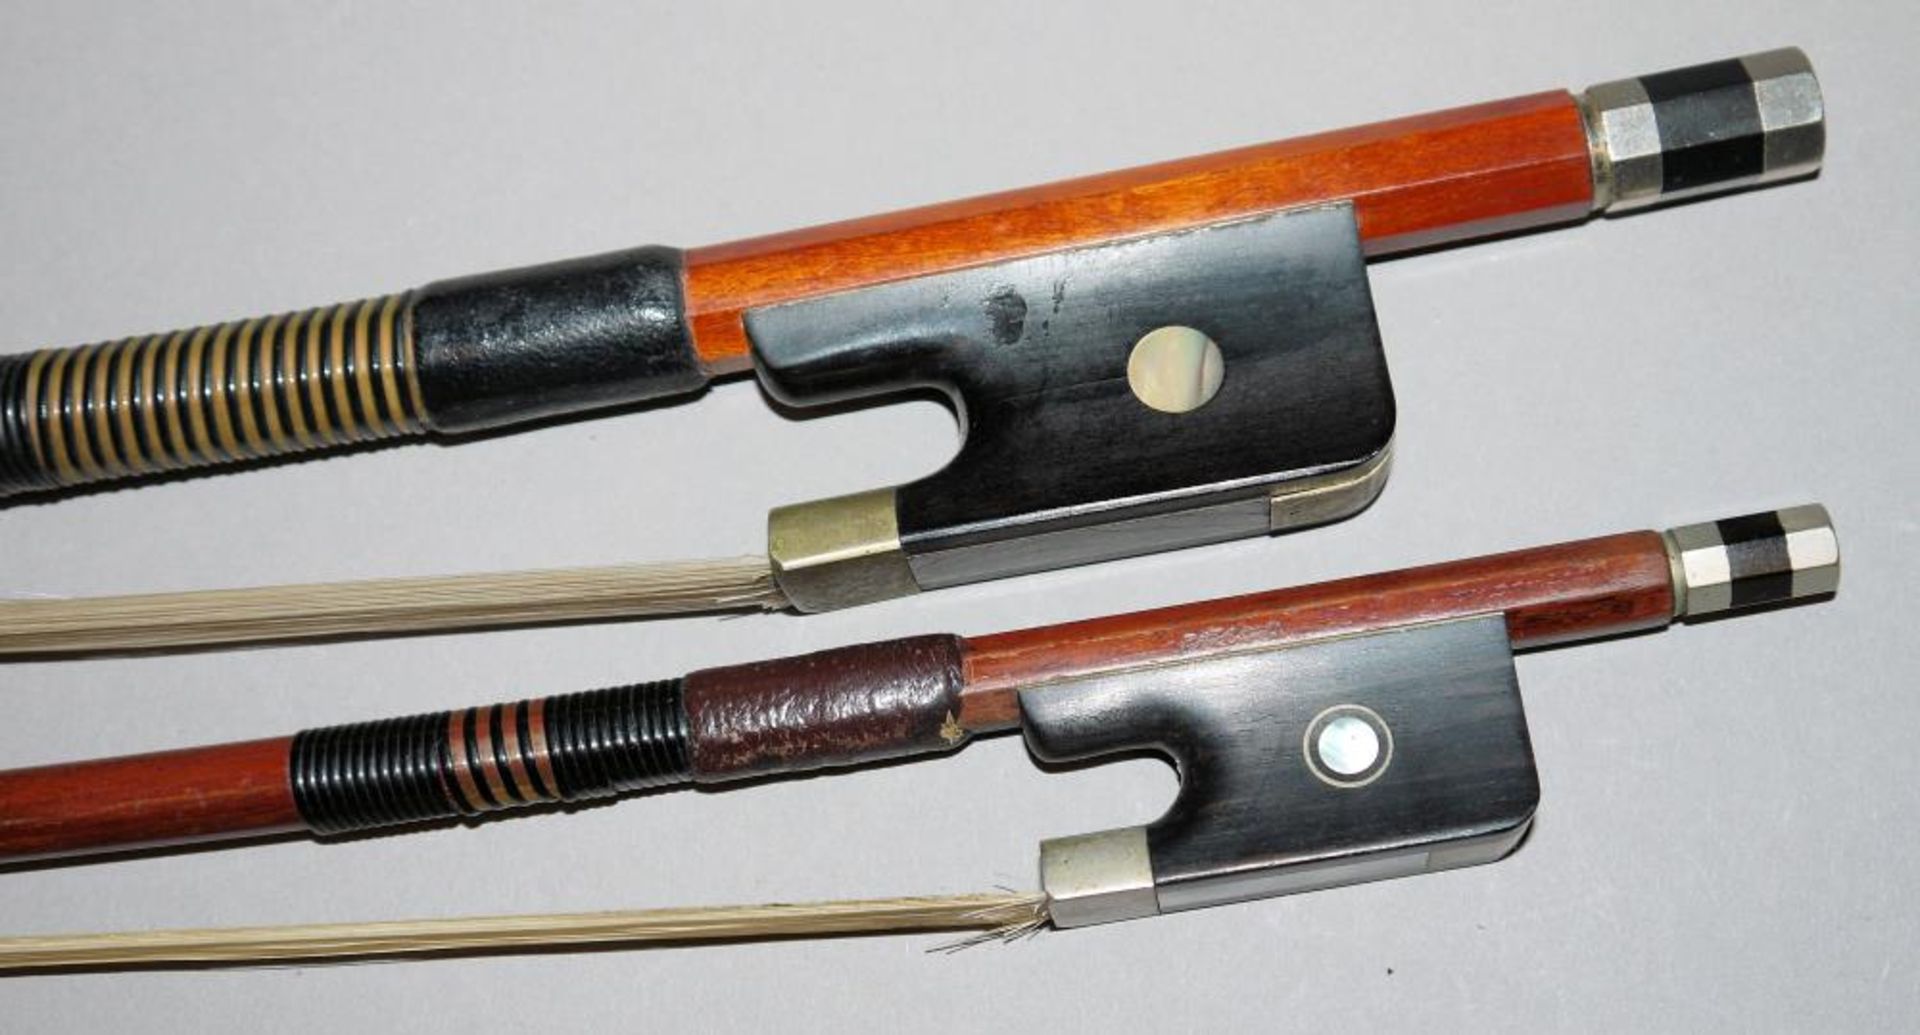 Zwei Cello-Bögen, einmal Roderich Paesold Zwei Cello-Bögen, Brasilholz, 64,5/ 68 cm, einmal signiert